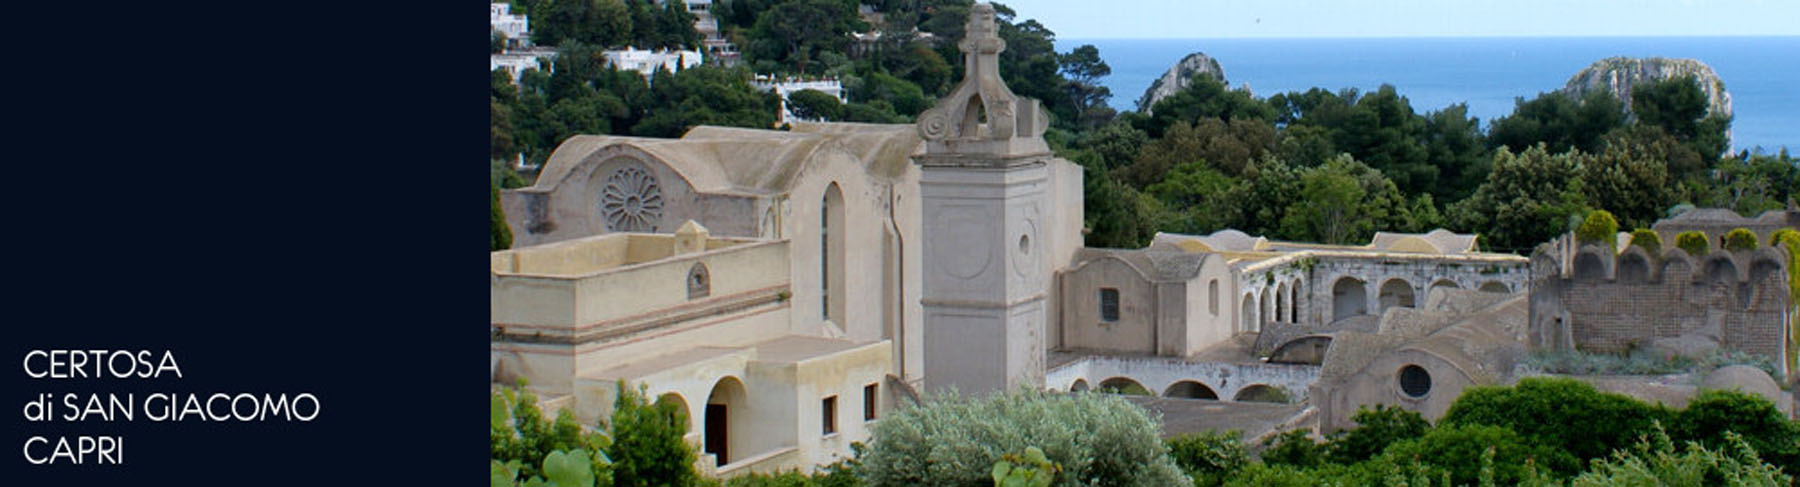 Capri – Certosa di San Giacomo – Interventi di messa in sicurezza antincendio